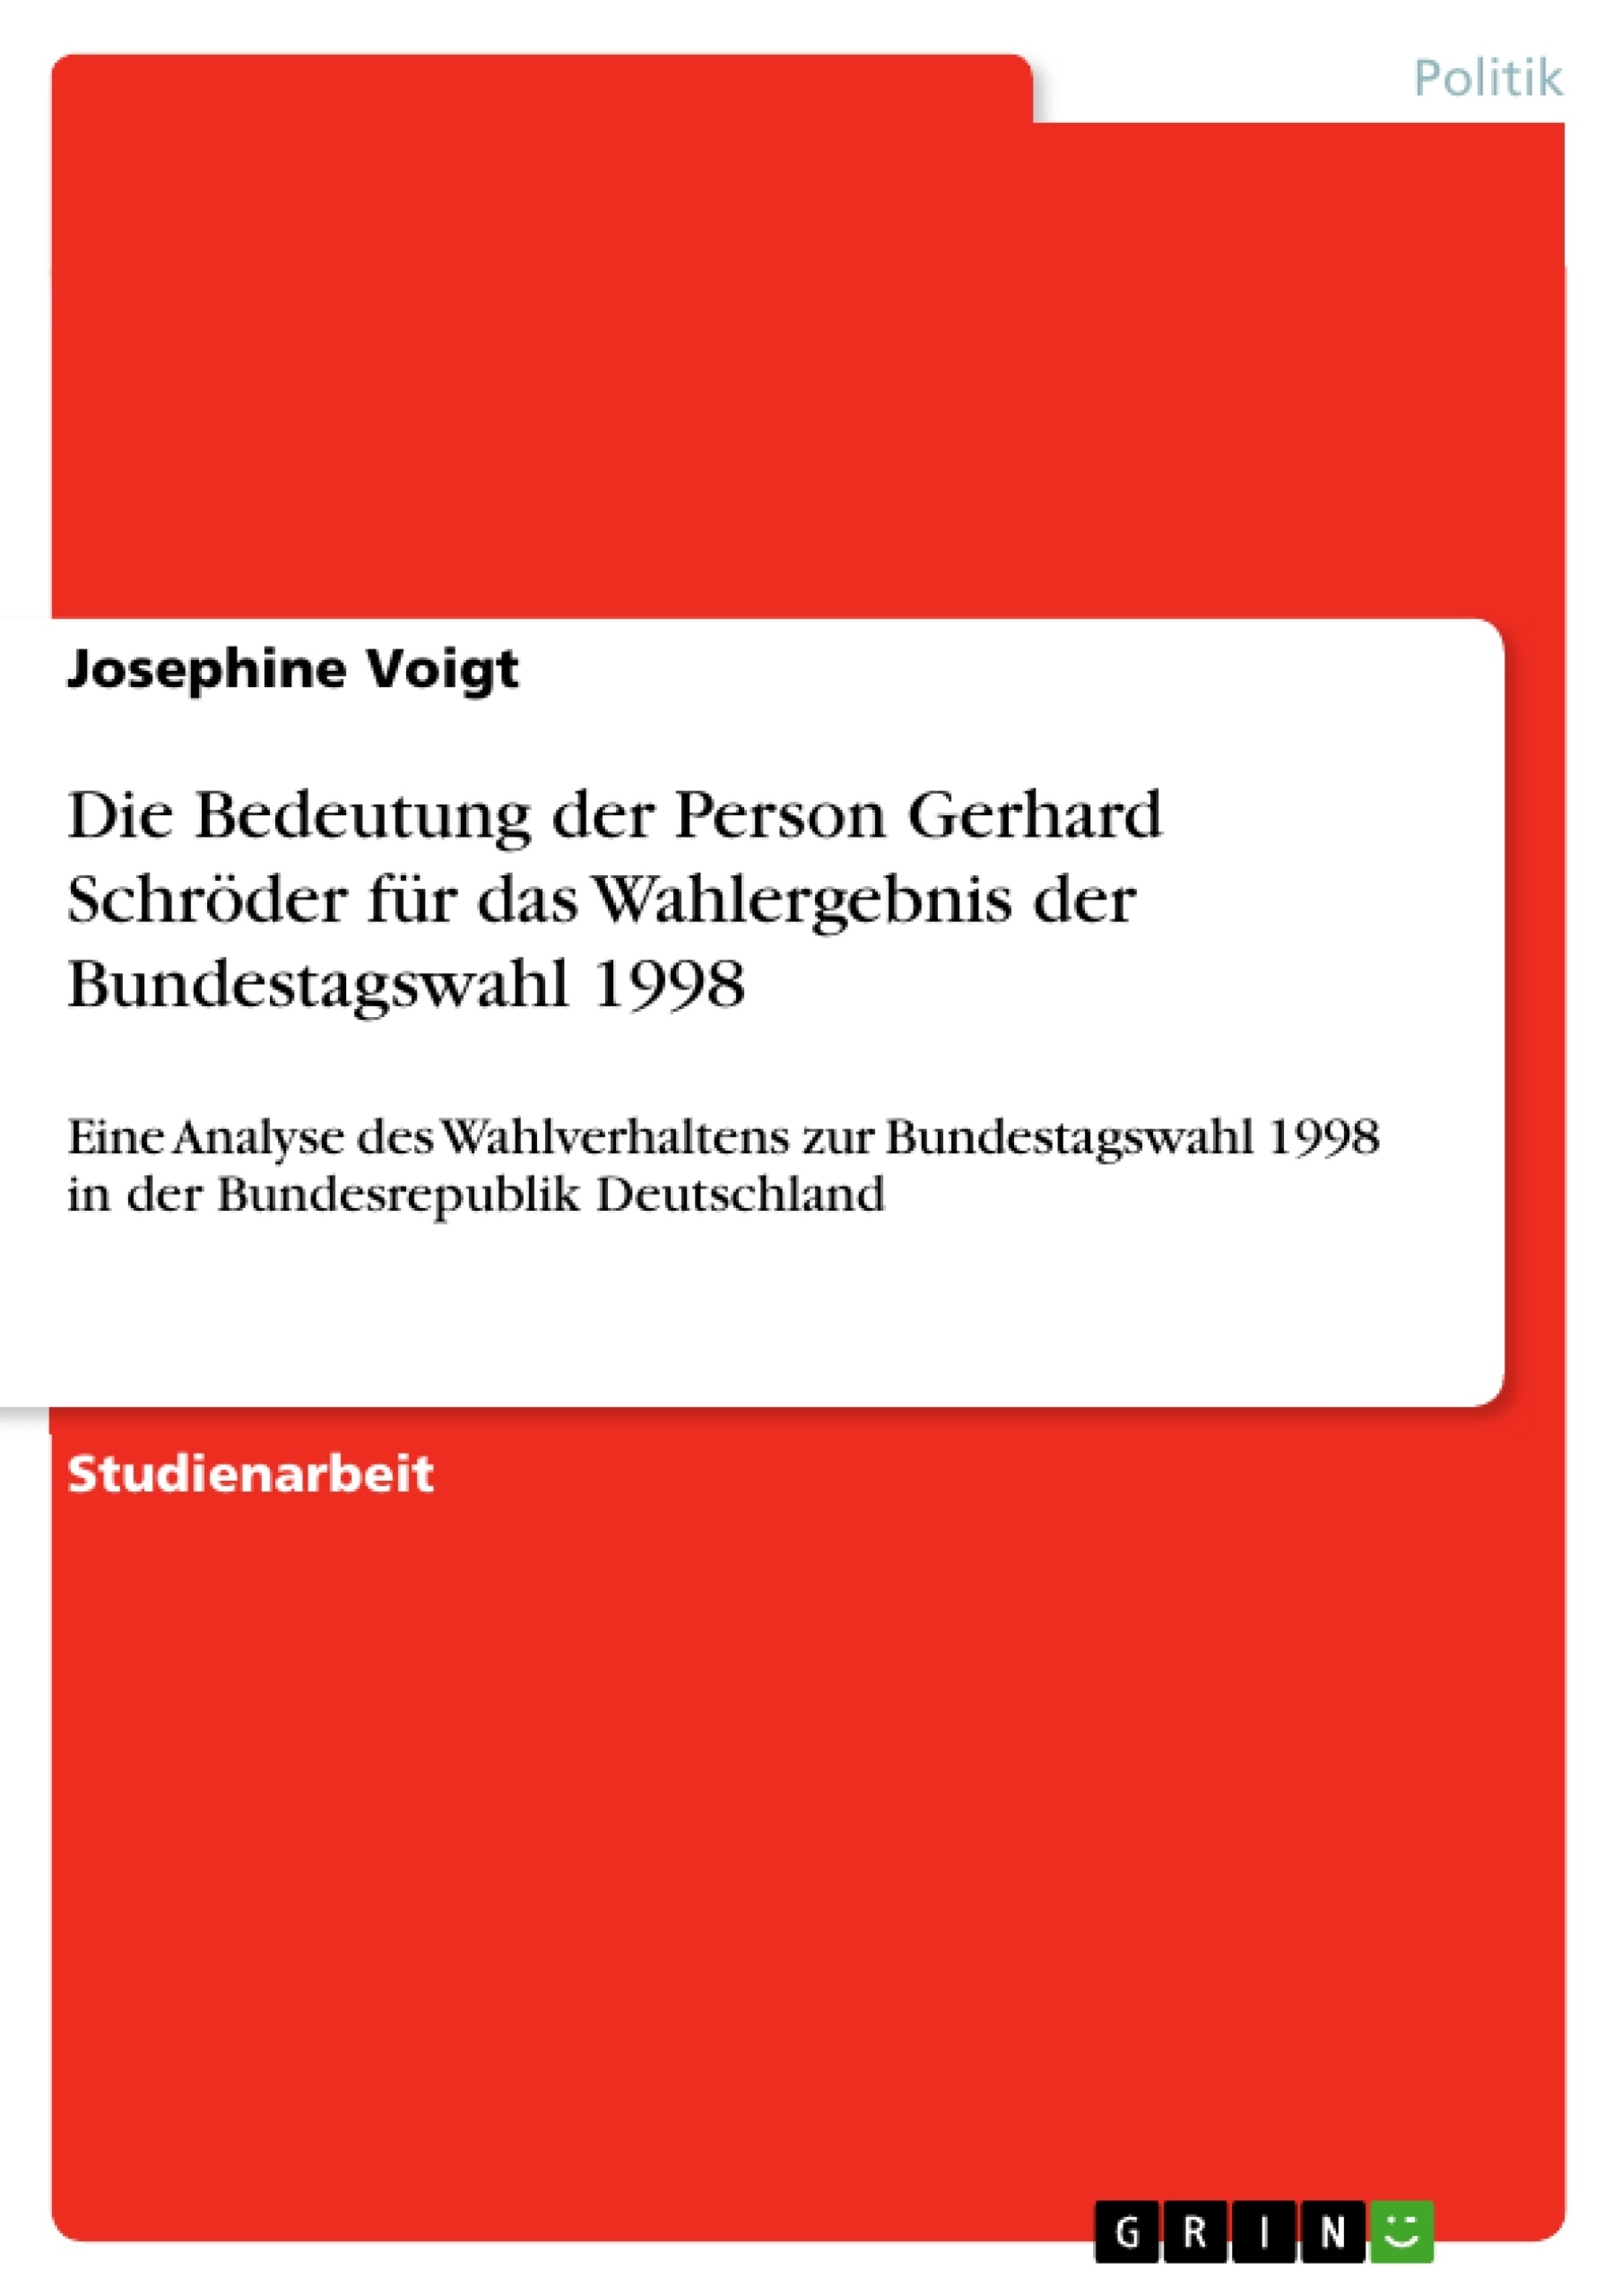 Título: Die Bedeutung der Person Gerhard Schröder für das Wahlergebnis der Bundestagswahl 1998